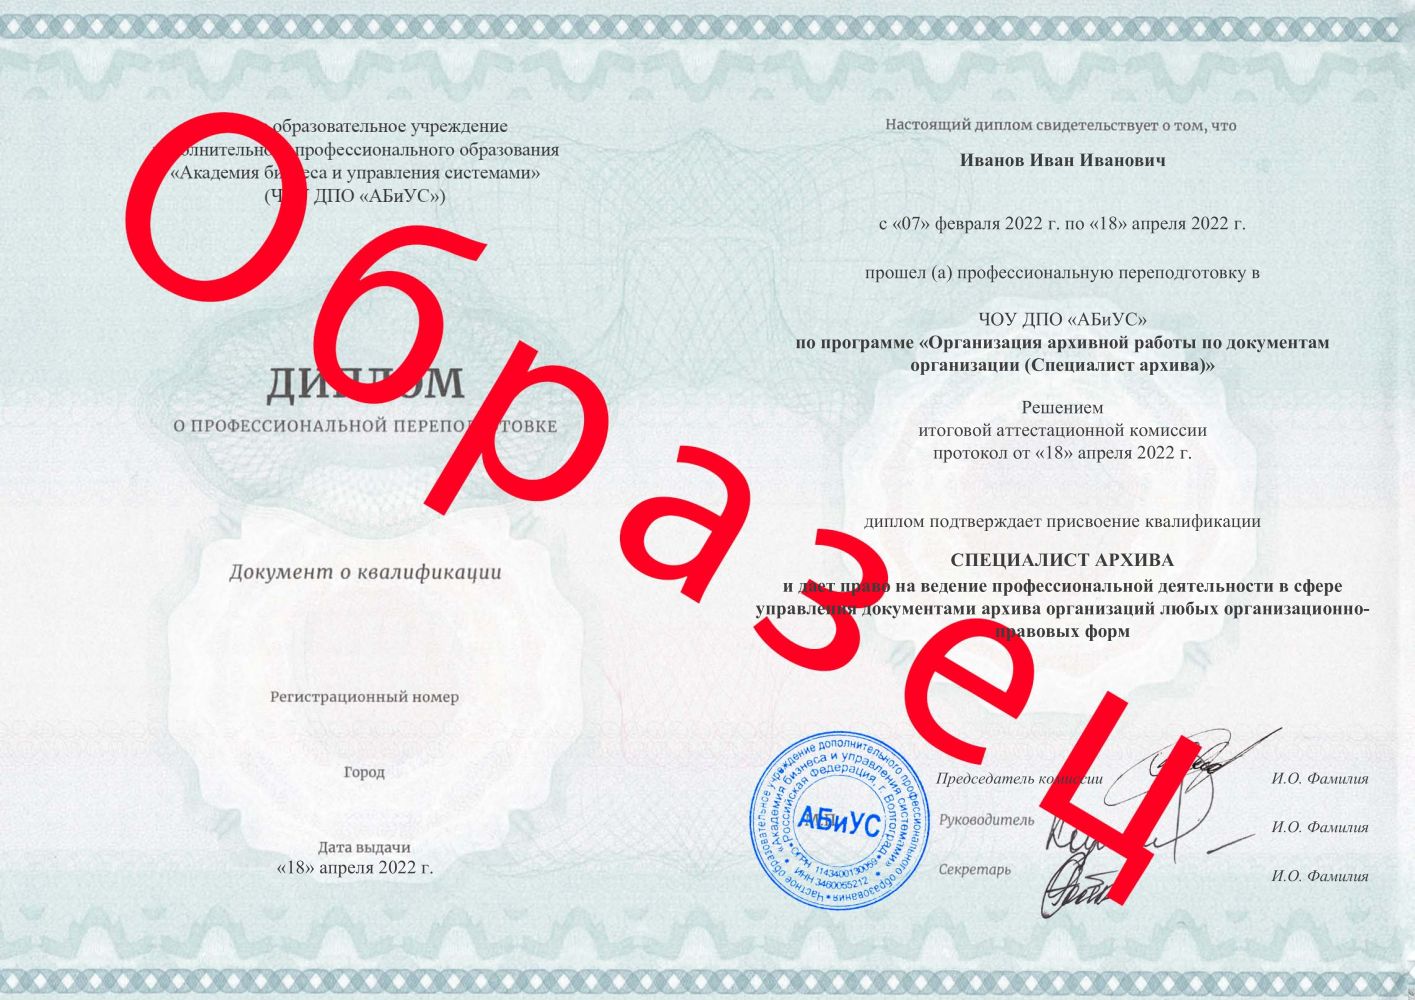 Диплом Организация архивной работы по документам организации (Специалист архива) 260 часов 10688 руб.